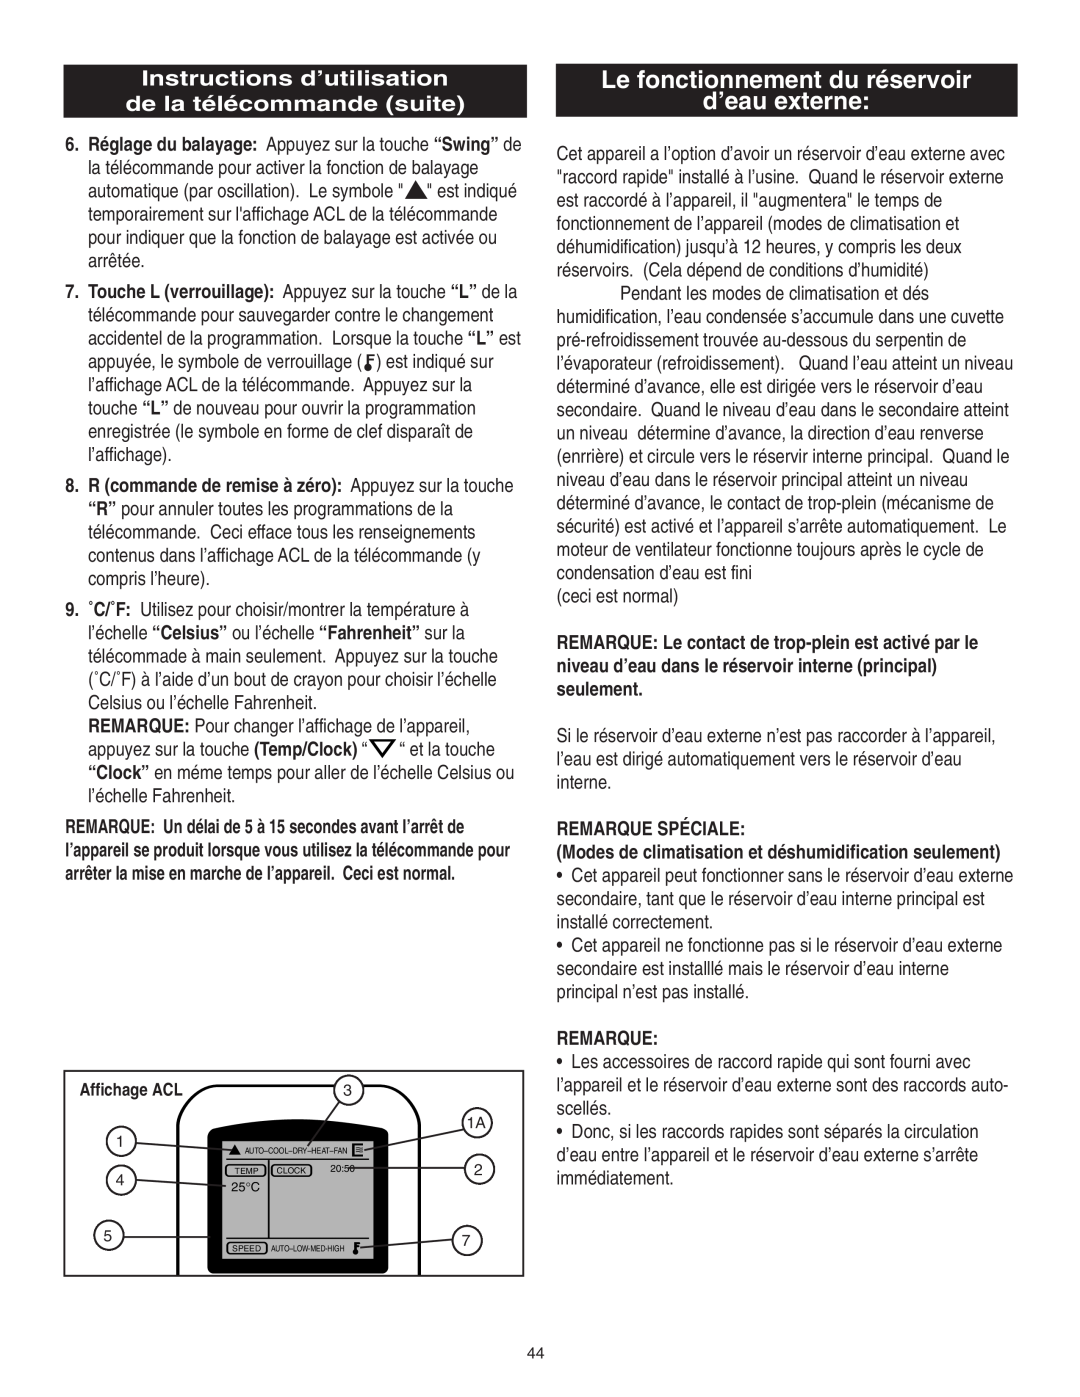 Danby SPAC8499 manual Le fonctionnement du réservoir d’eau externe, Instructions d’utilisation, de la télécommande suite 